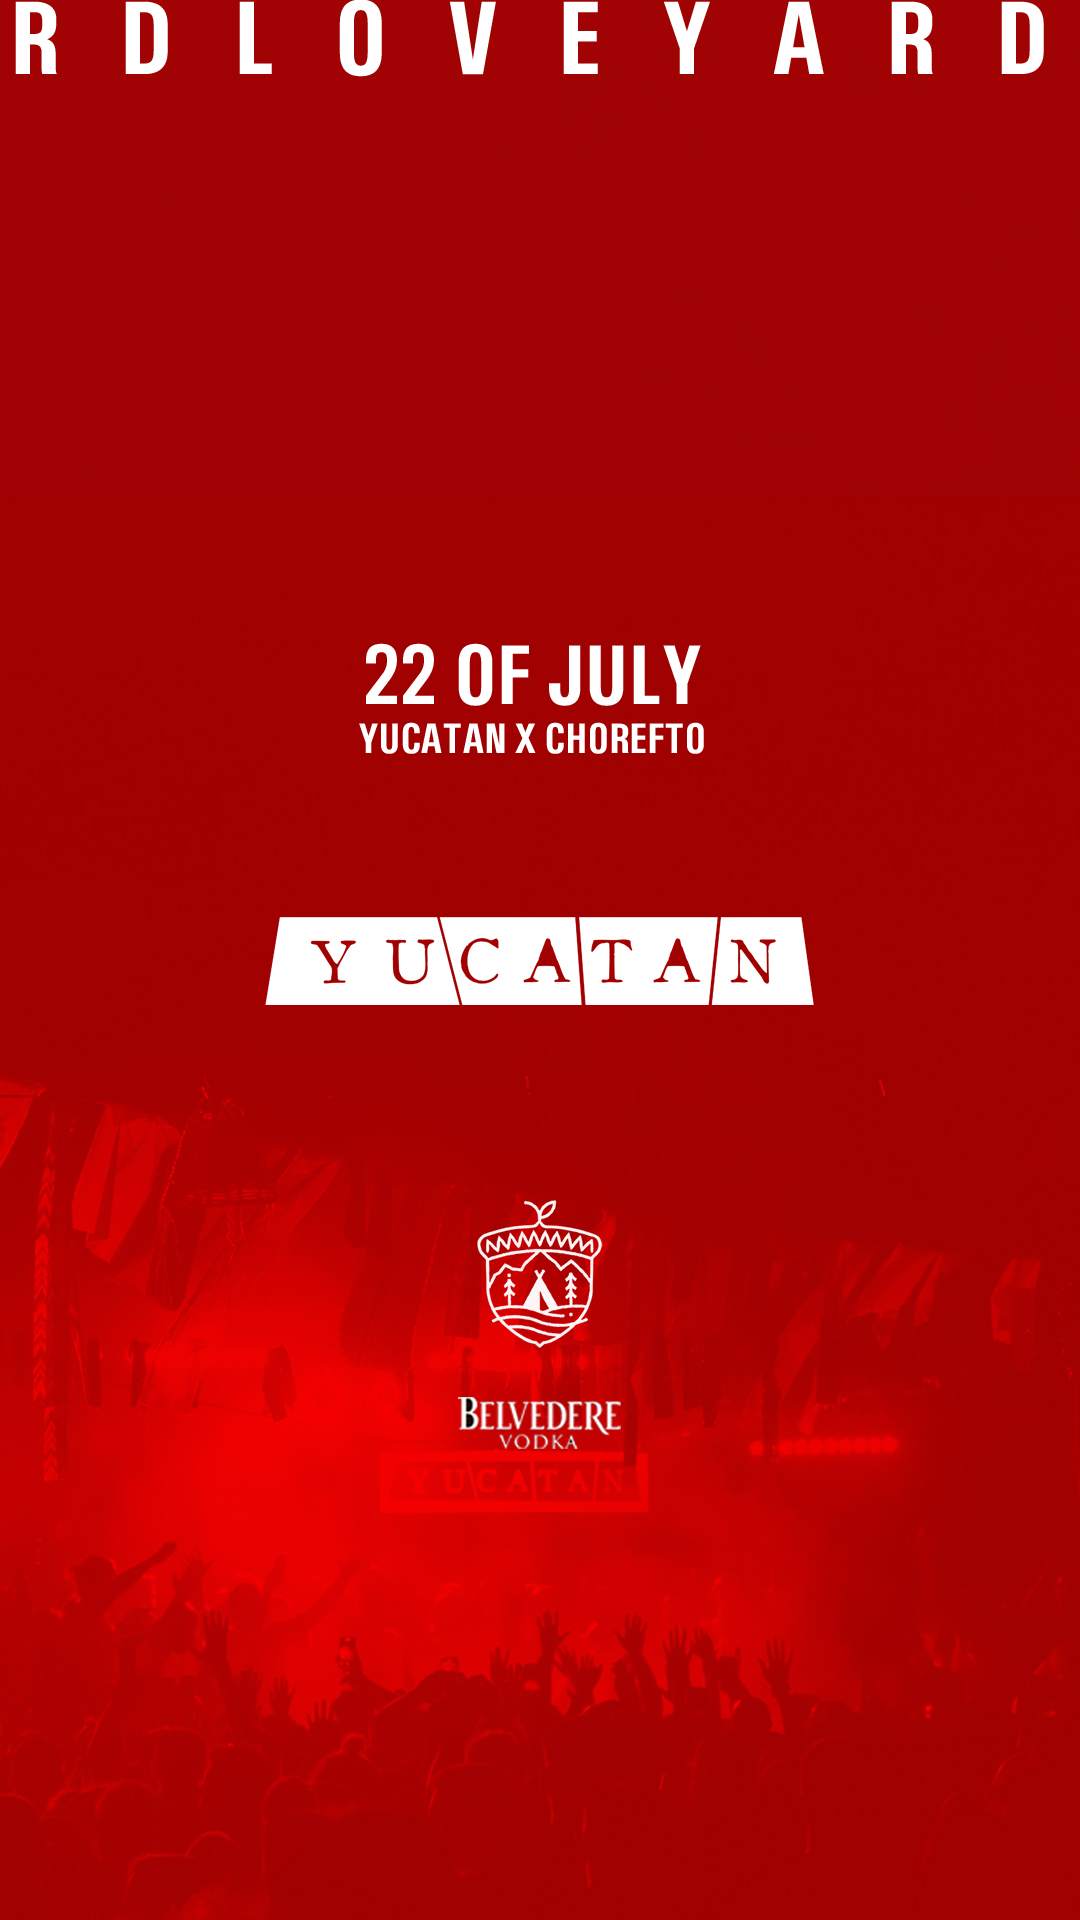 Yucatan presents Loveyard - フライヤー表